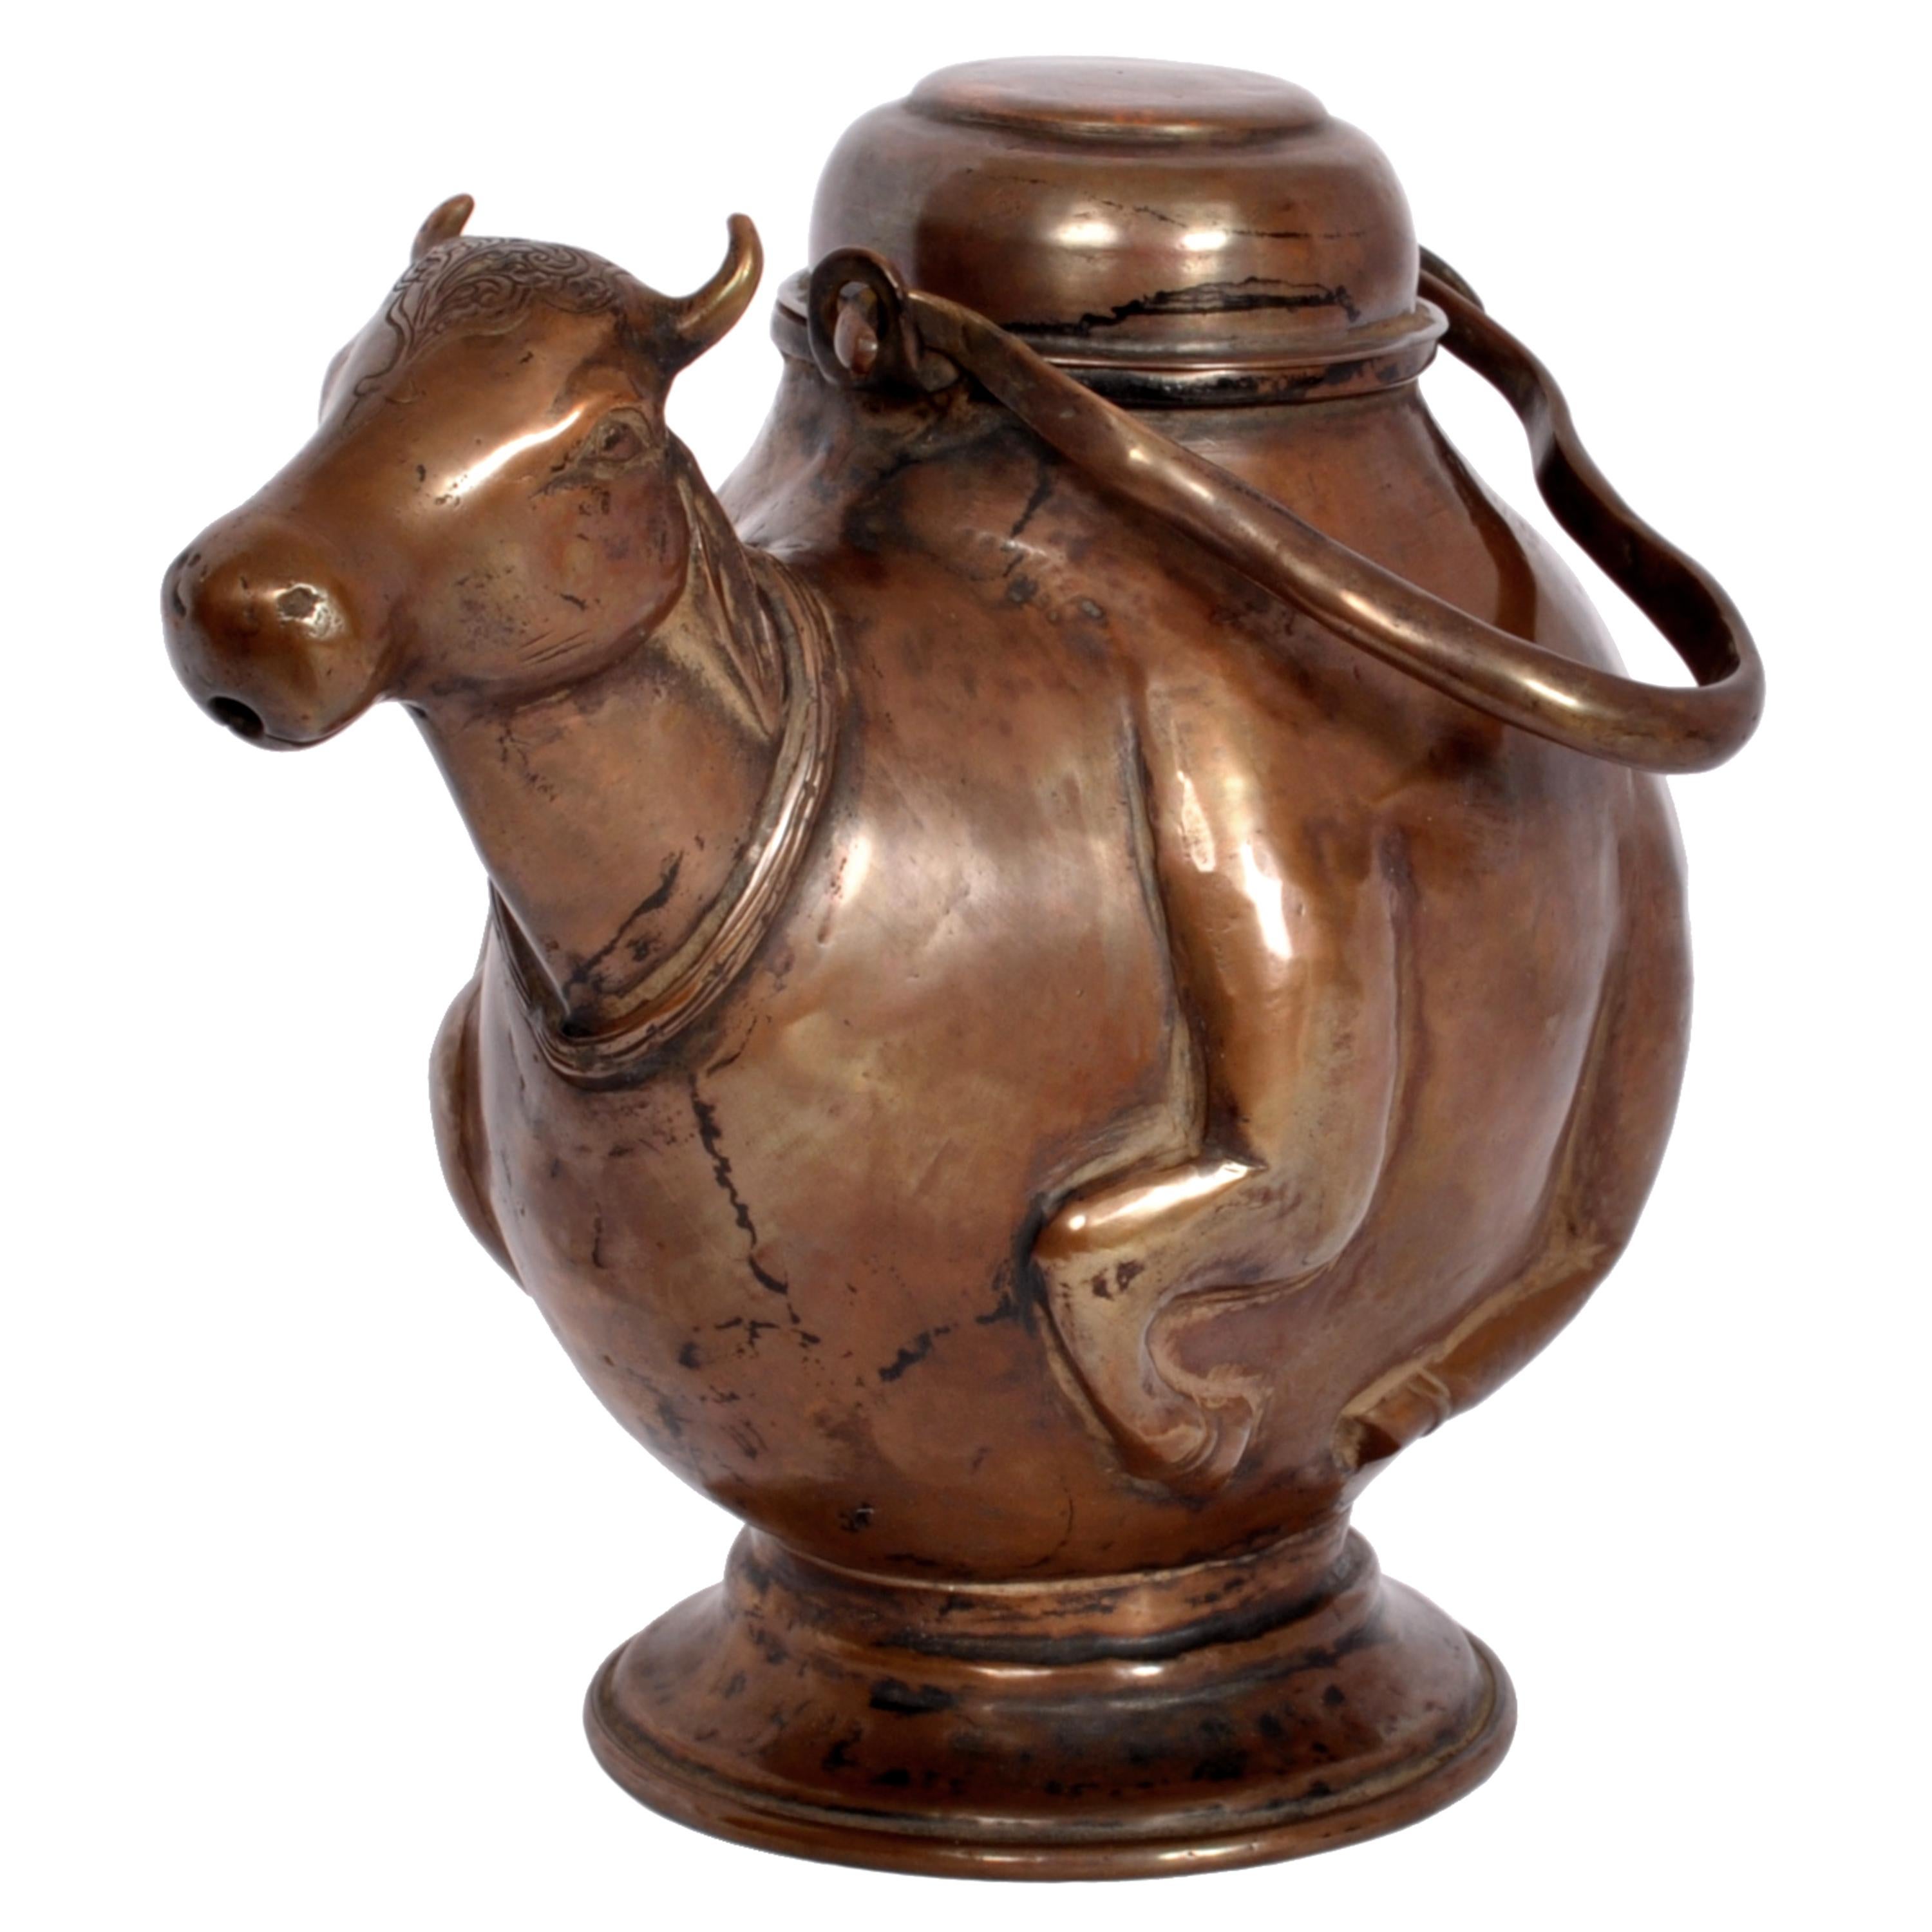 Ancien récipient à eau en cuivre hindou Nandi (taureau) à couvercle et à anse, vers 1800.
Dans la foi et la culture hindoues de l'Inde, le taureau est un animal sacré, le terme Nandi signifie 